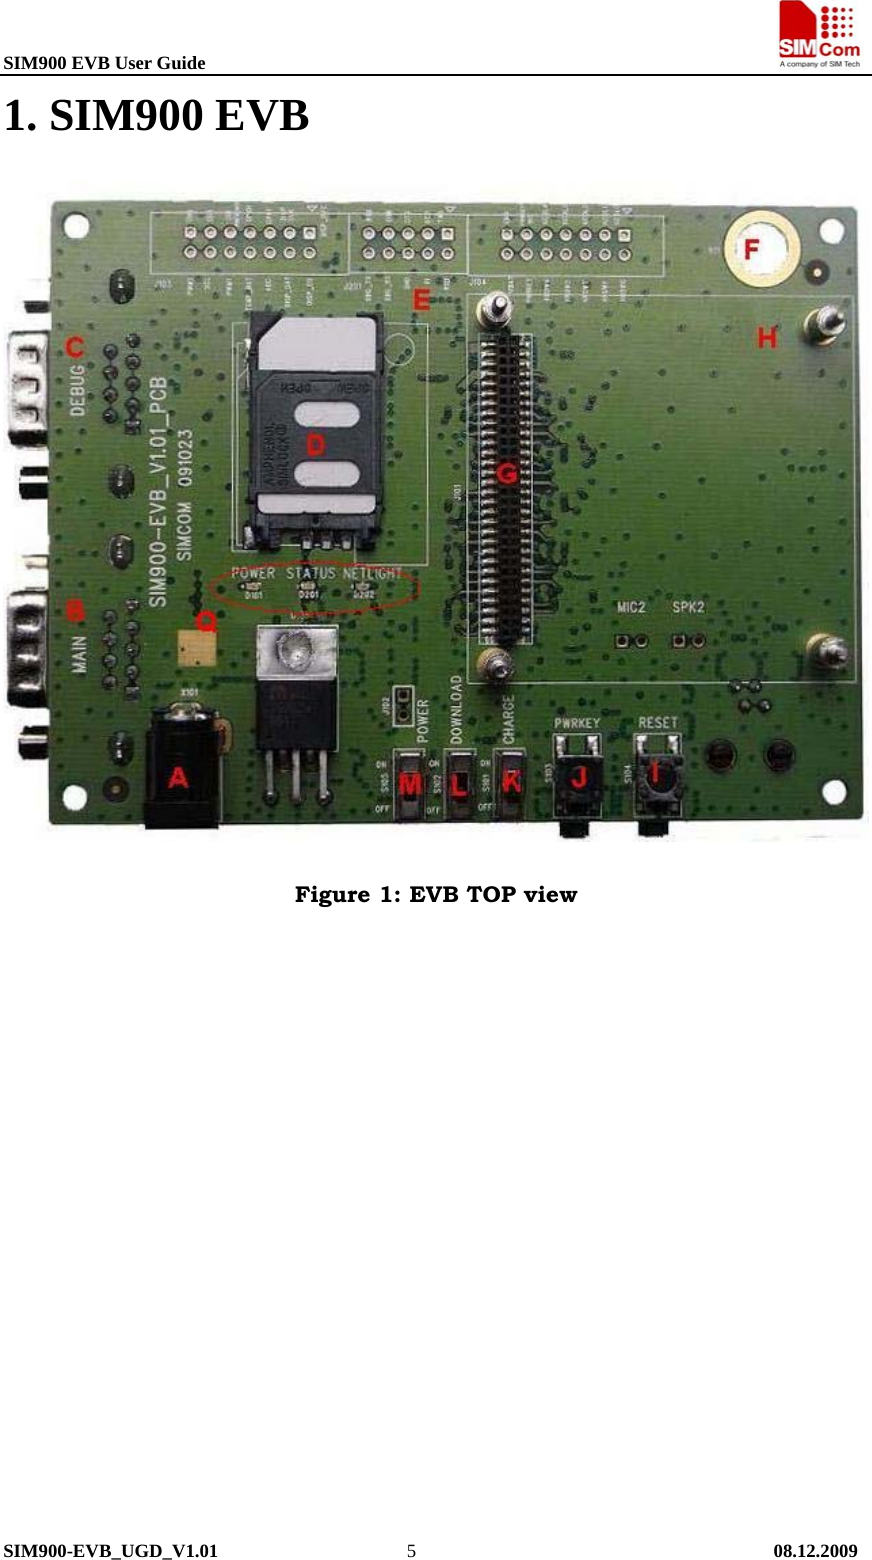 SIM900 EVB User Guide                                                                       SIM900-EVB_UGD_V1.01                    5                                      08.12.2009 1. SIM900 EVB  Figure 1: EVB TOP view 